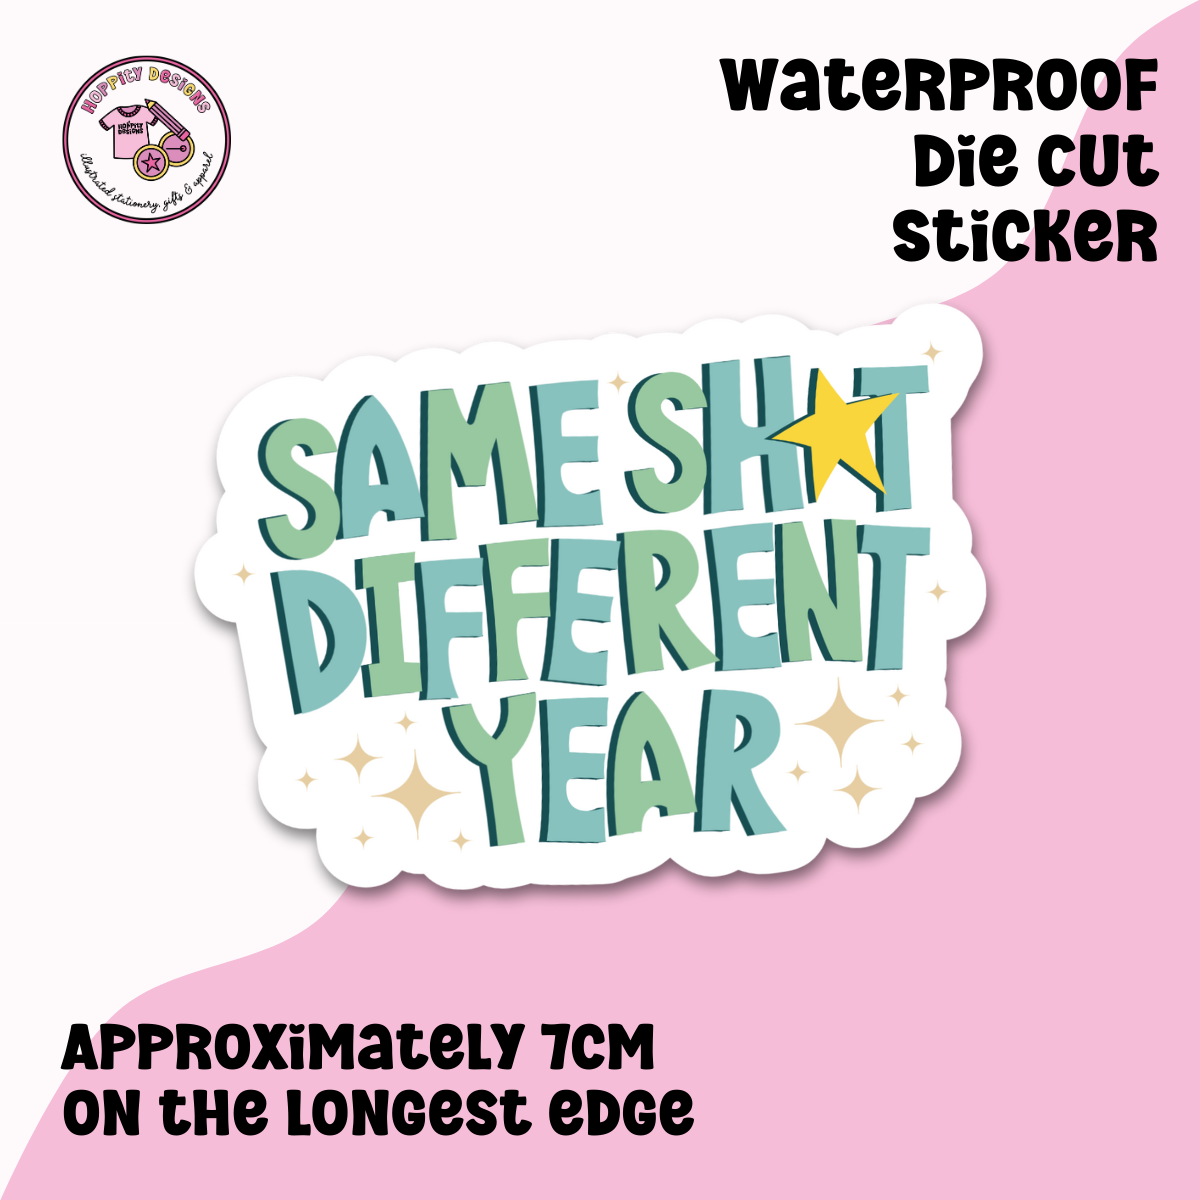 Same Shit Different Year Die Cut Sticker